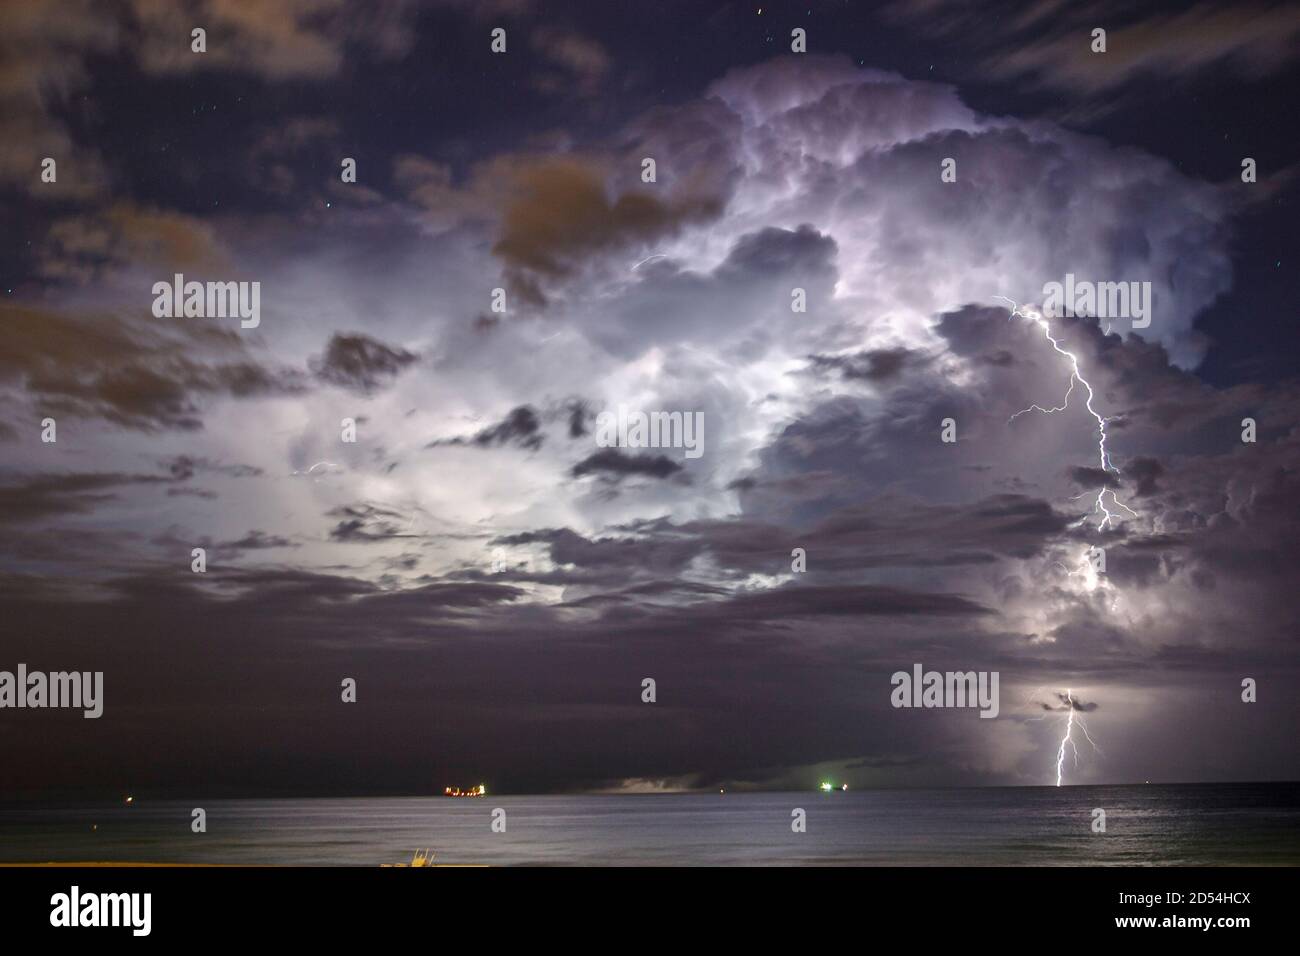 Miami Beach Florida, Regensturm Gewitter Sturm, Wolken Wolken Himmel Wetter über dem Atlantischen Ozean, Blitzeinschlag Nacht Stockfoto